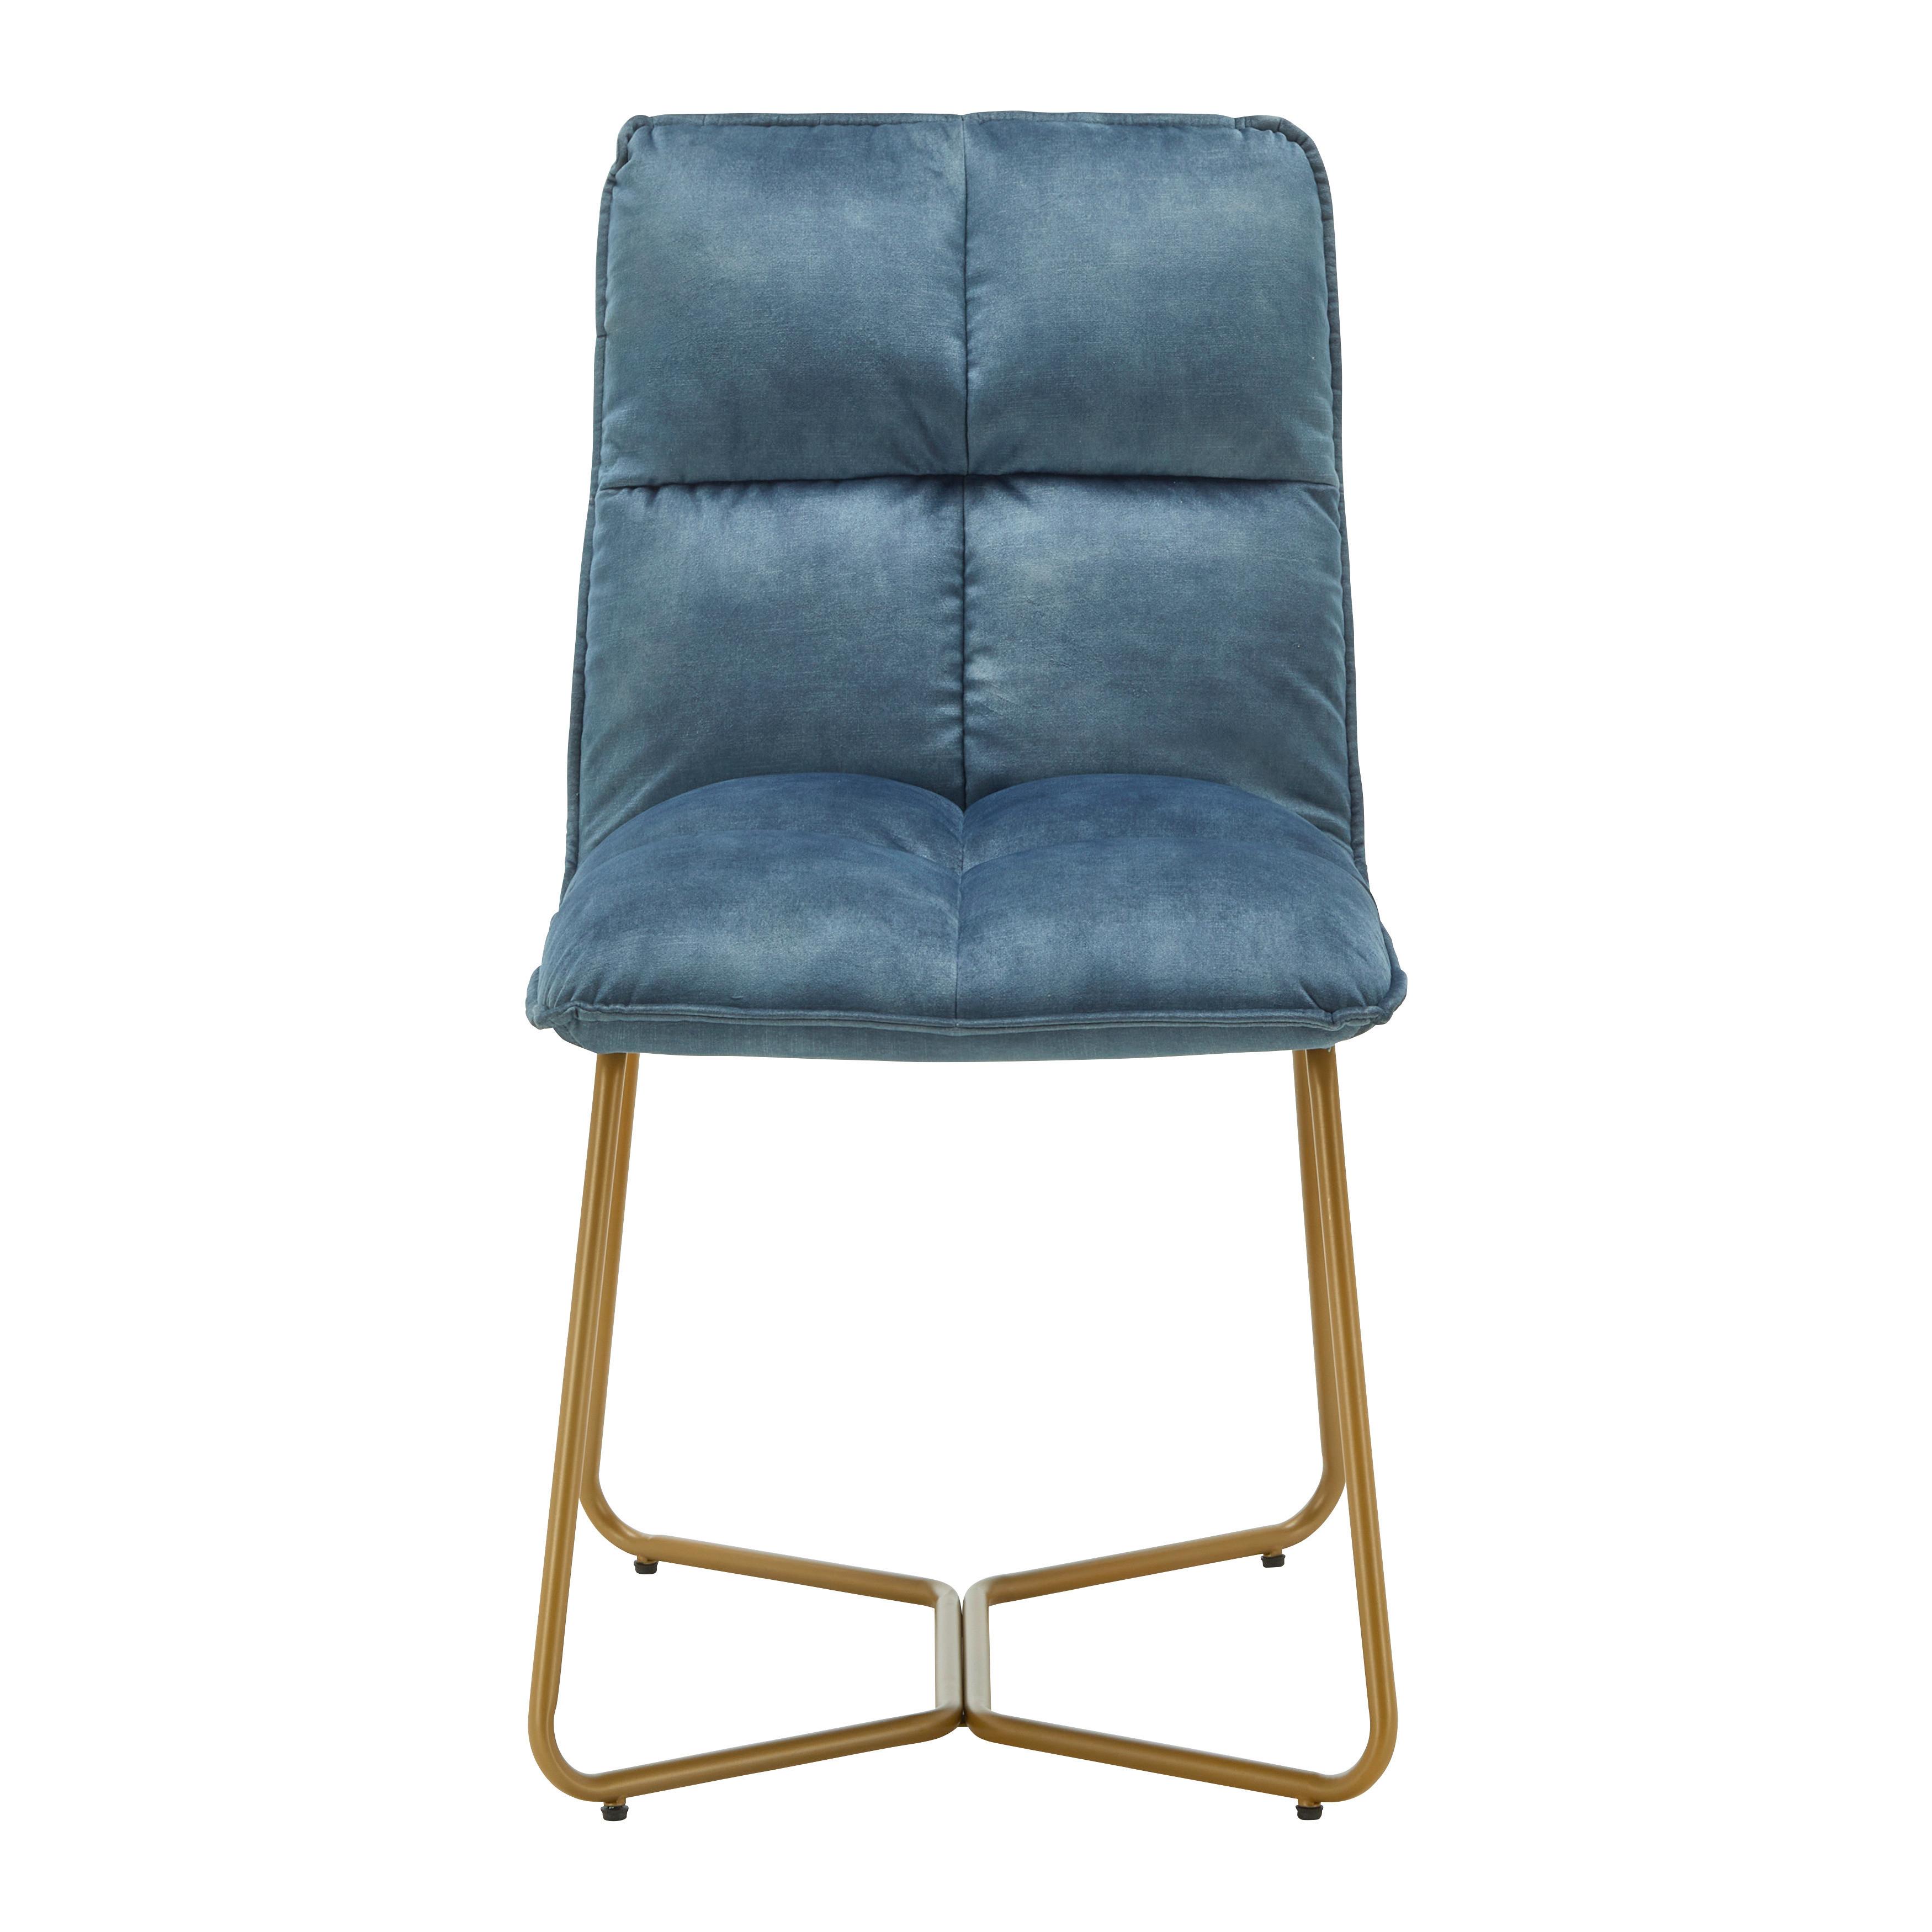 Stuhl "Fonia", Samtbezug, blau, Gepolstert - Blau/Goldfarben, MODERN, Holz/Textil (49/85,5/57,5cm) - Bessagi Home